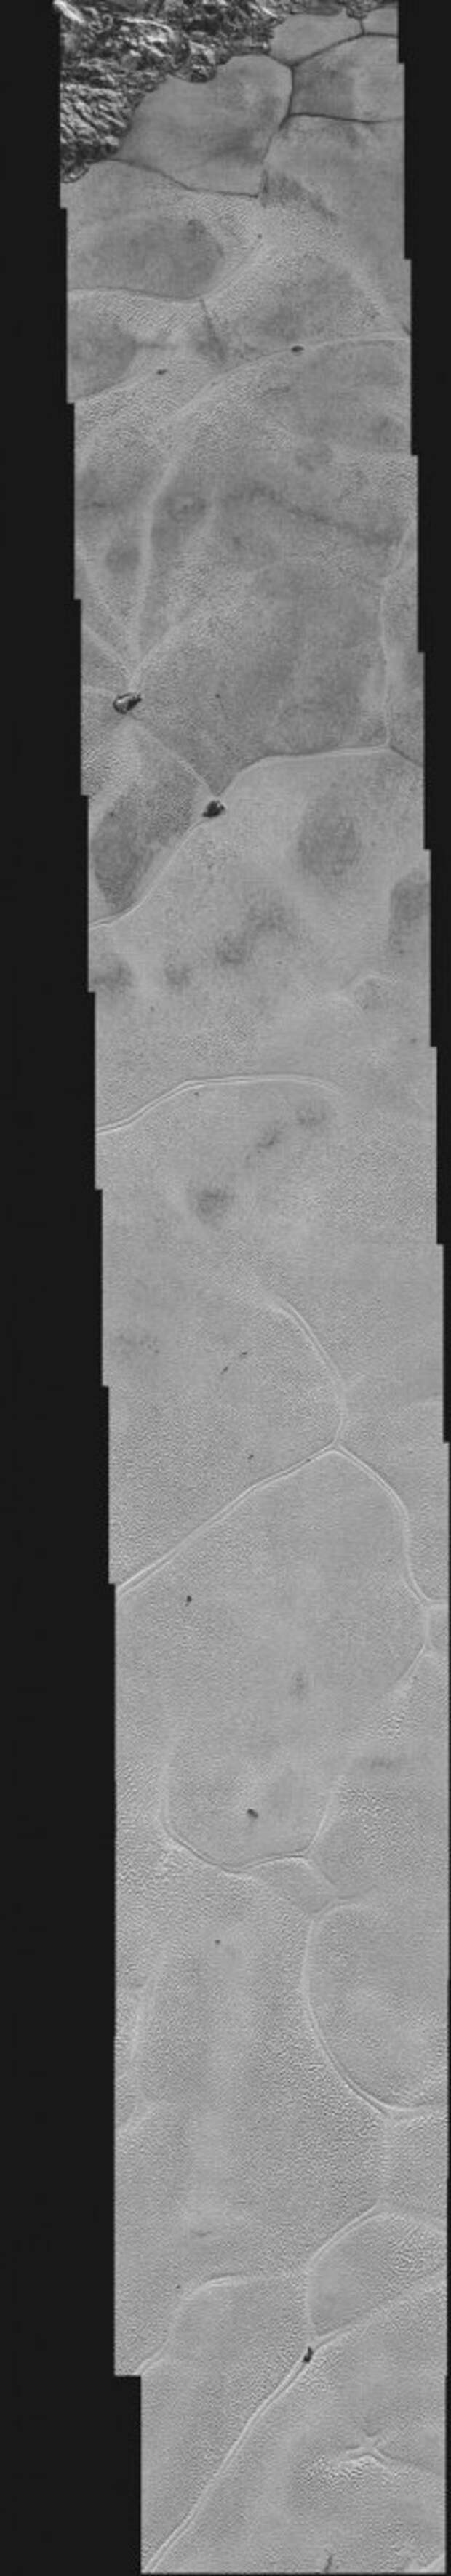 Аппарат New Horizons передал на Землю самые детальные снимки "сердца" Плутона  New Horizons, история, космос, факты